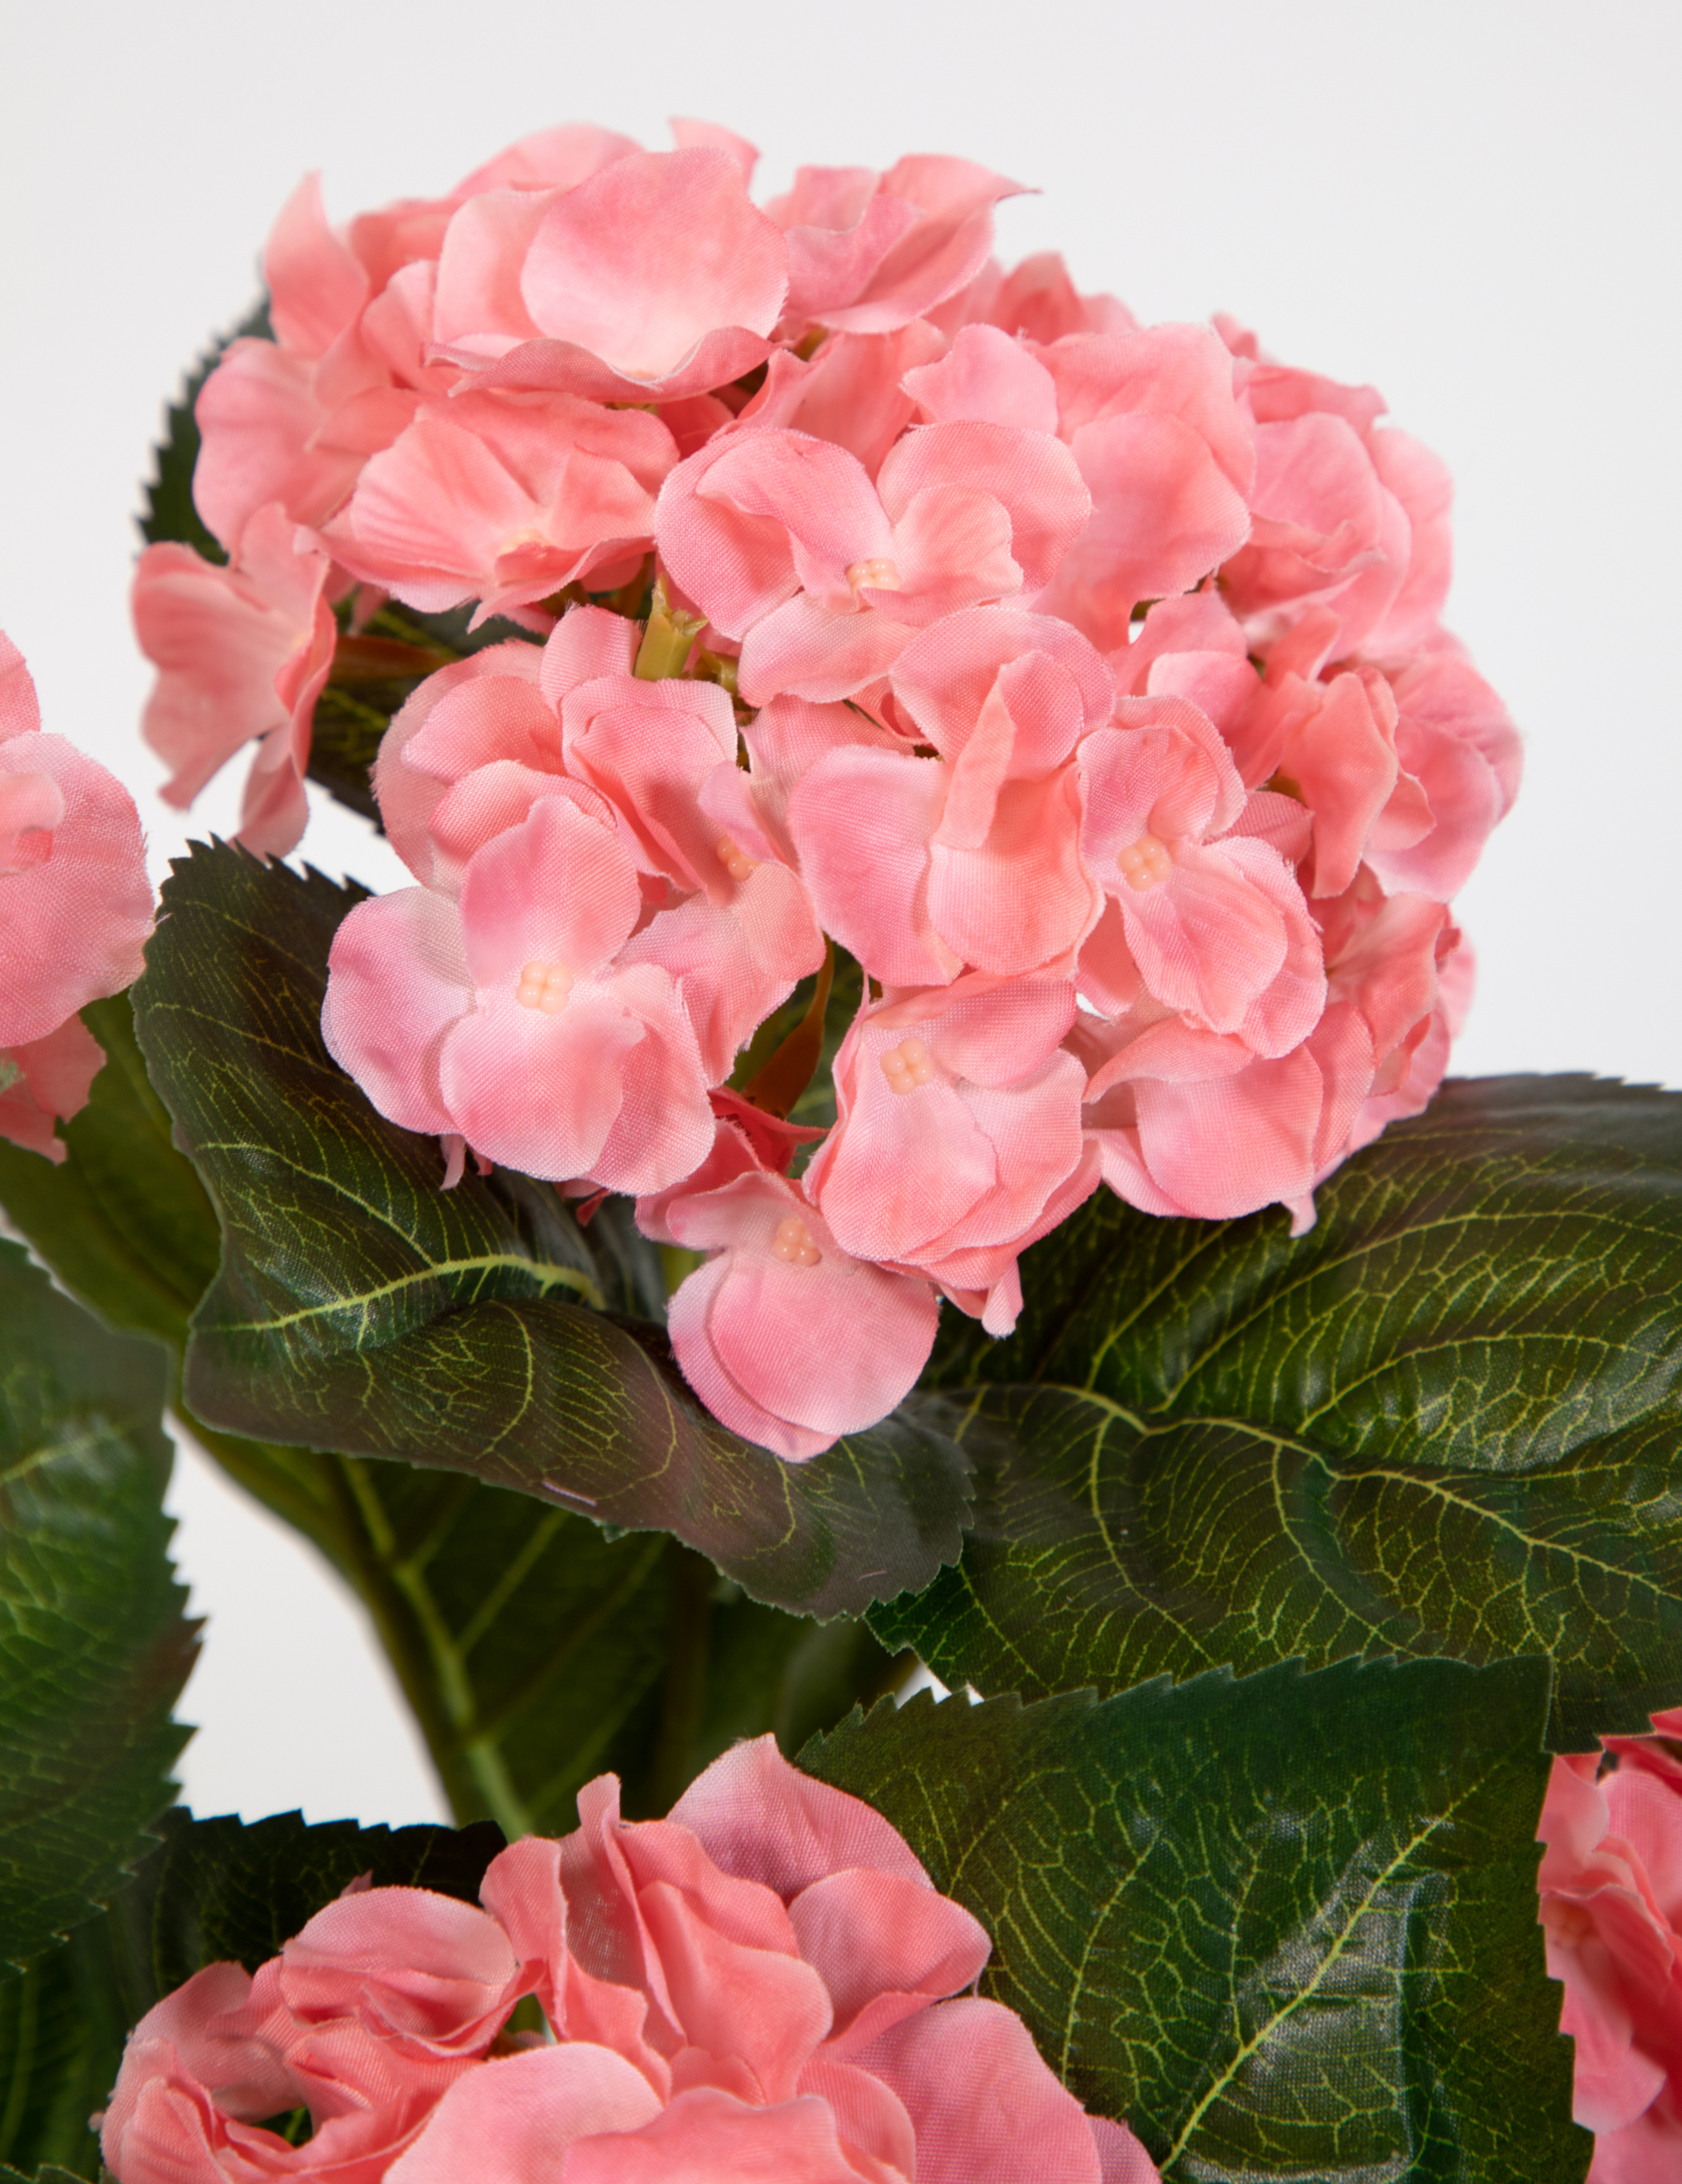 Hortensienbusch Deluxe 42cm rosa-pink im Topf LM Kunstpflanzen künstliche  Hortensie Pflanzen Blumen